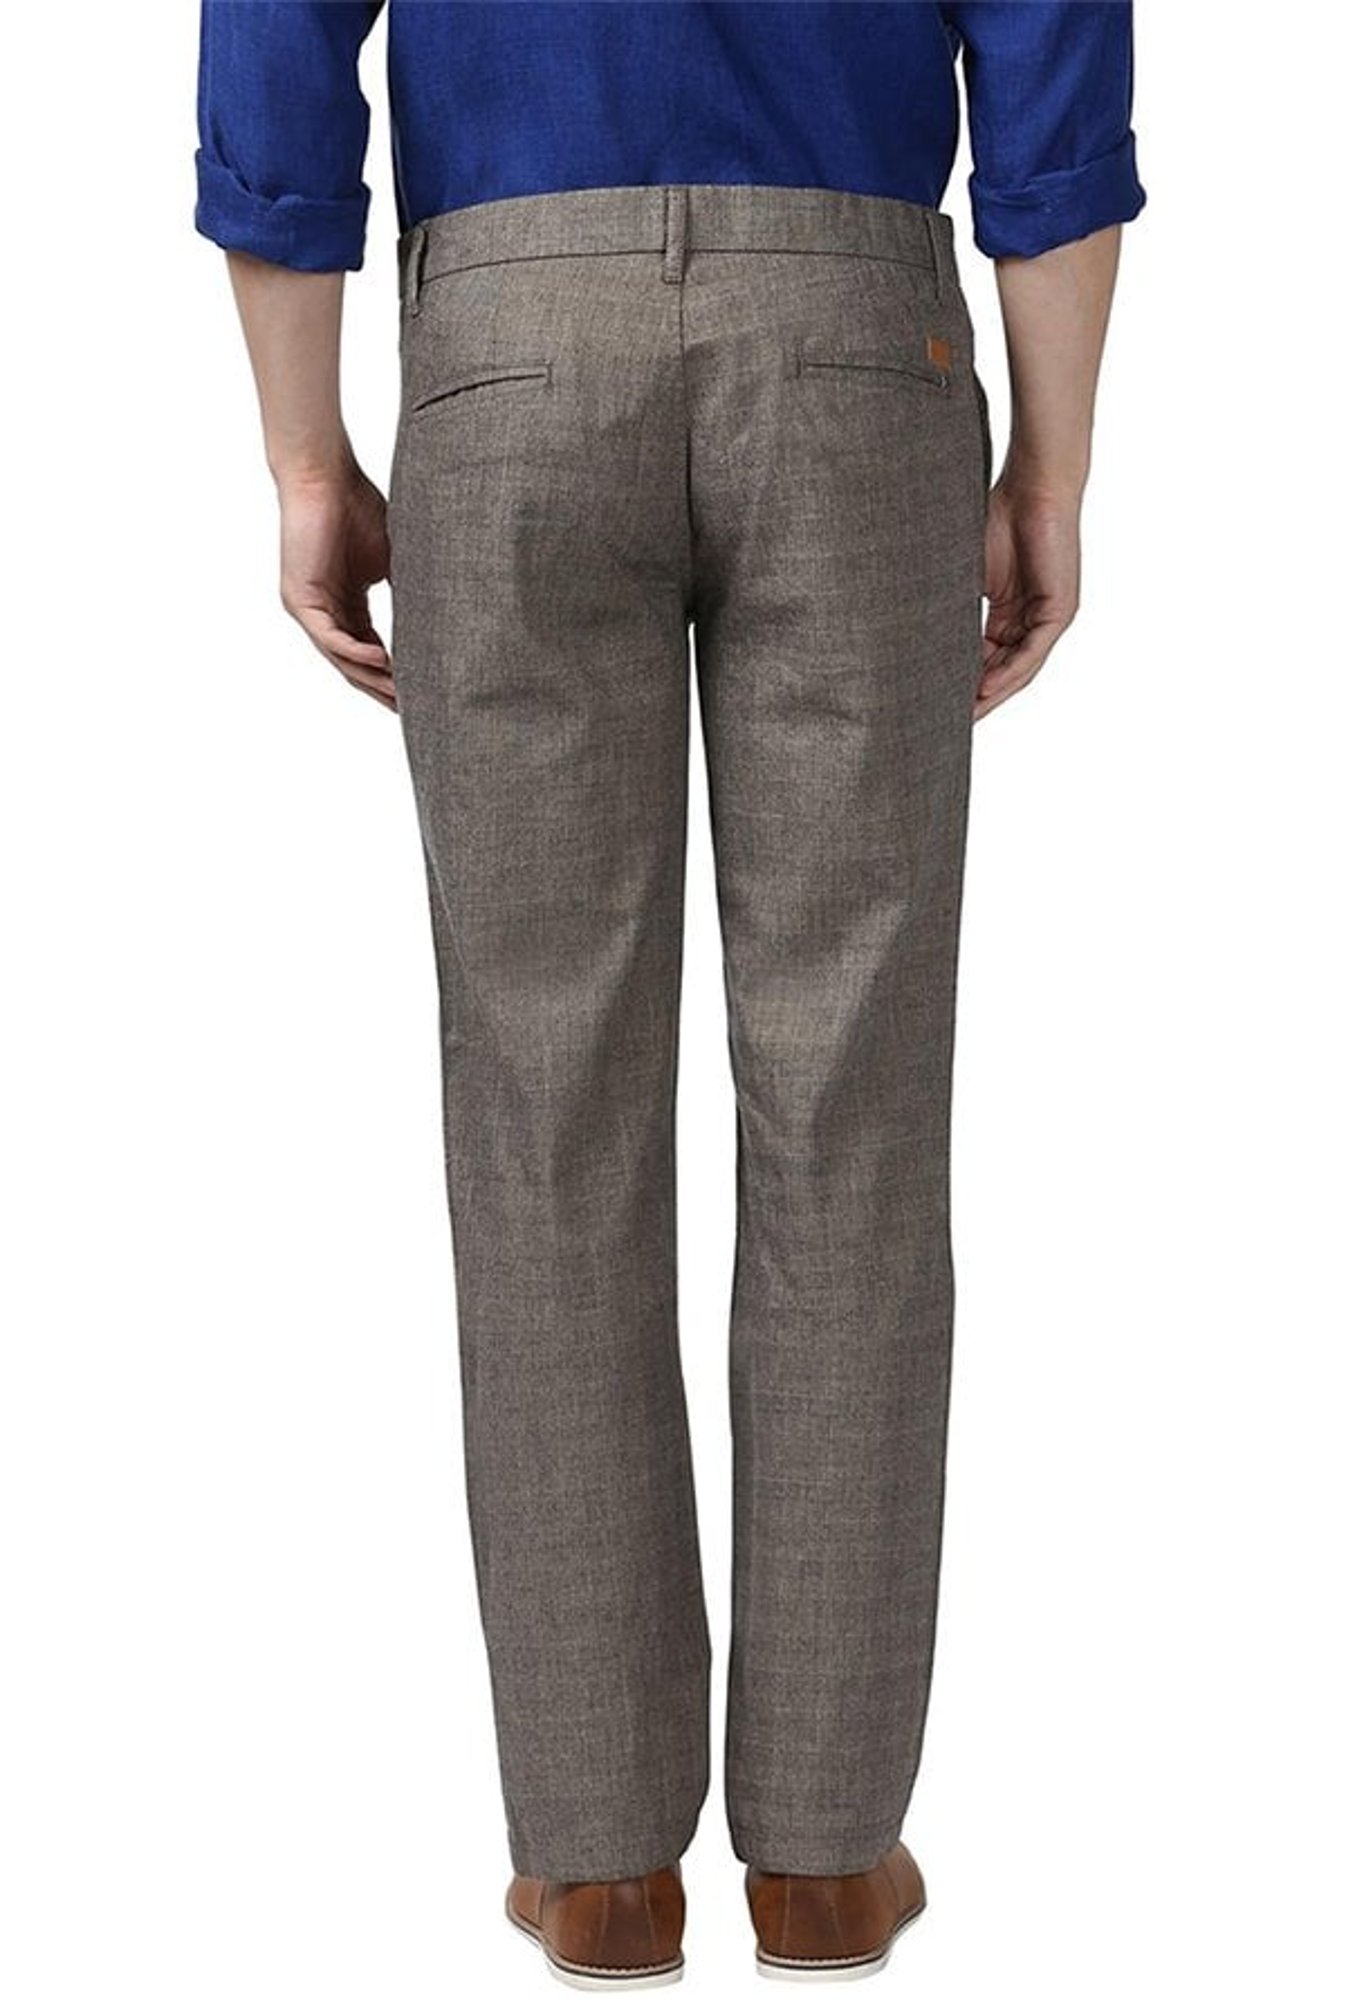 Park Avenue Cotton Solid Blue Super Slim Fit Trouser for Men  Amazonin  Fashion